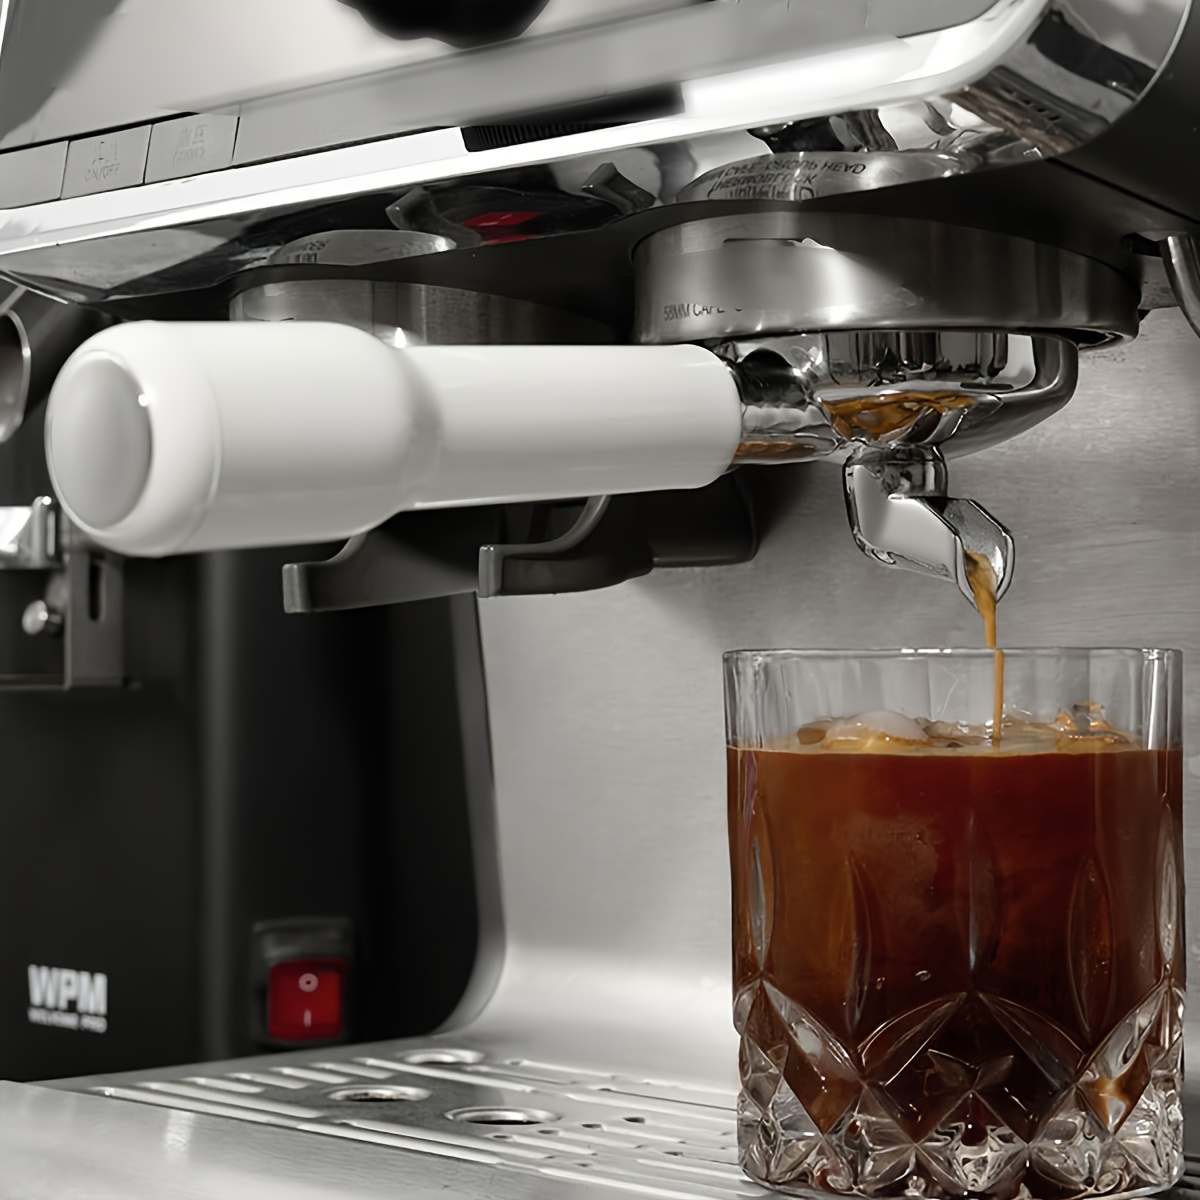 Paderno World Cuisine A4244057 Espresso Cappuccino Machine Accessories